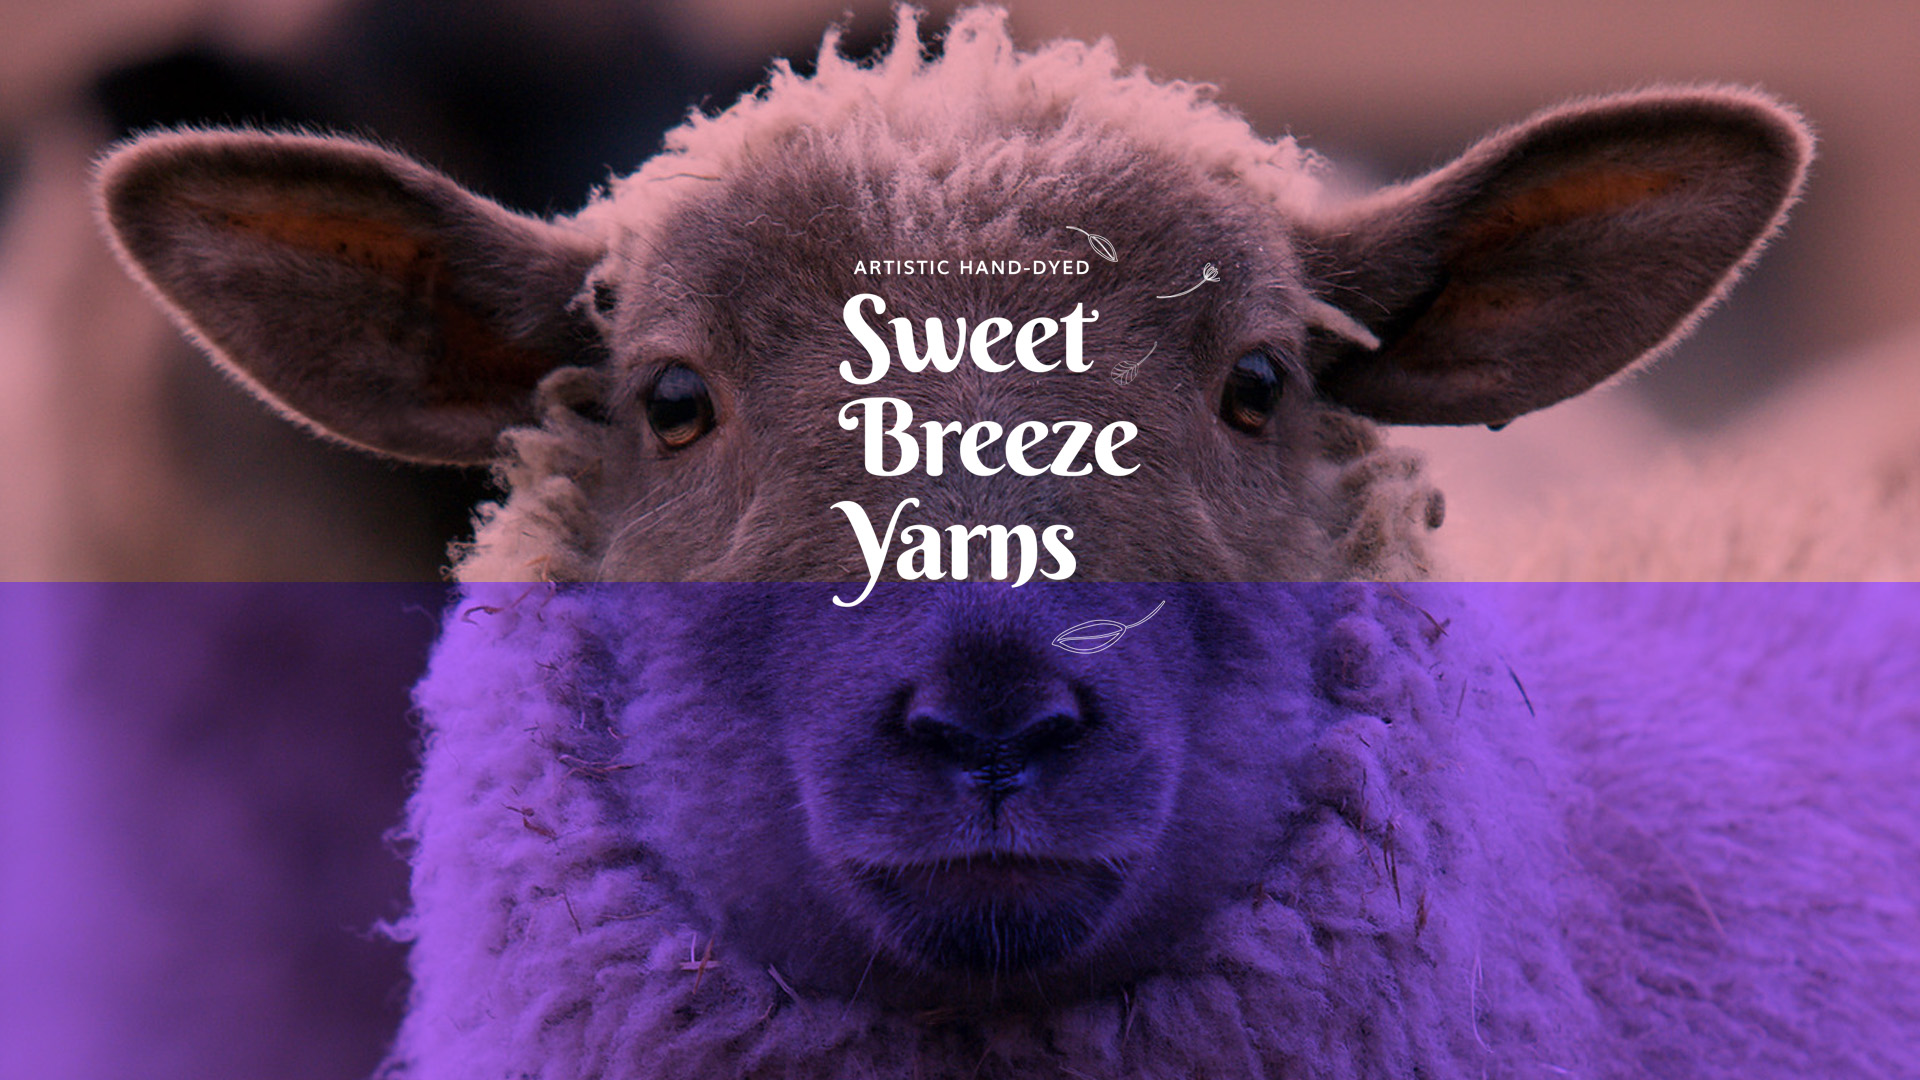 Imagem de fundo de ovelha com logotipo Sweet Breeze Yarns aplicado.